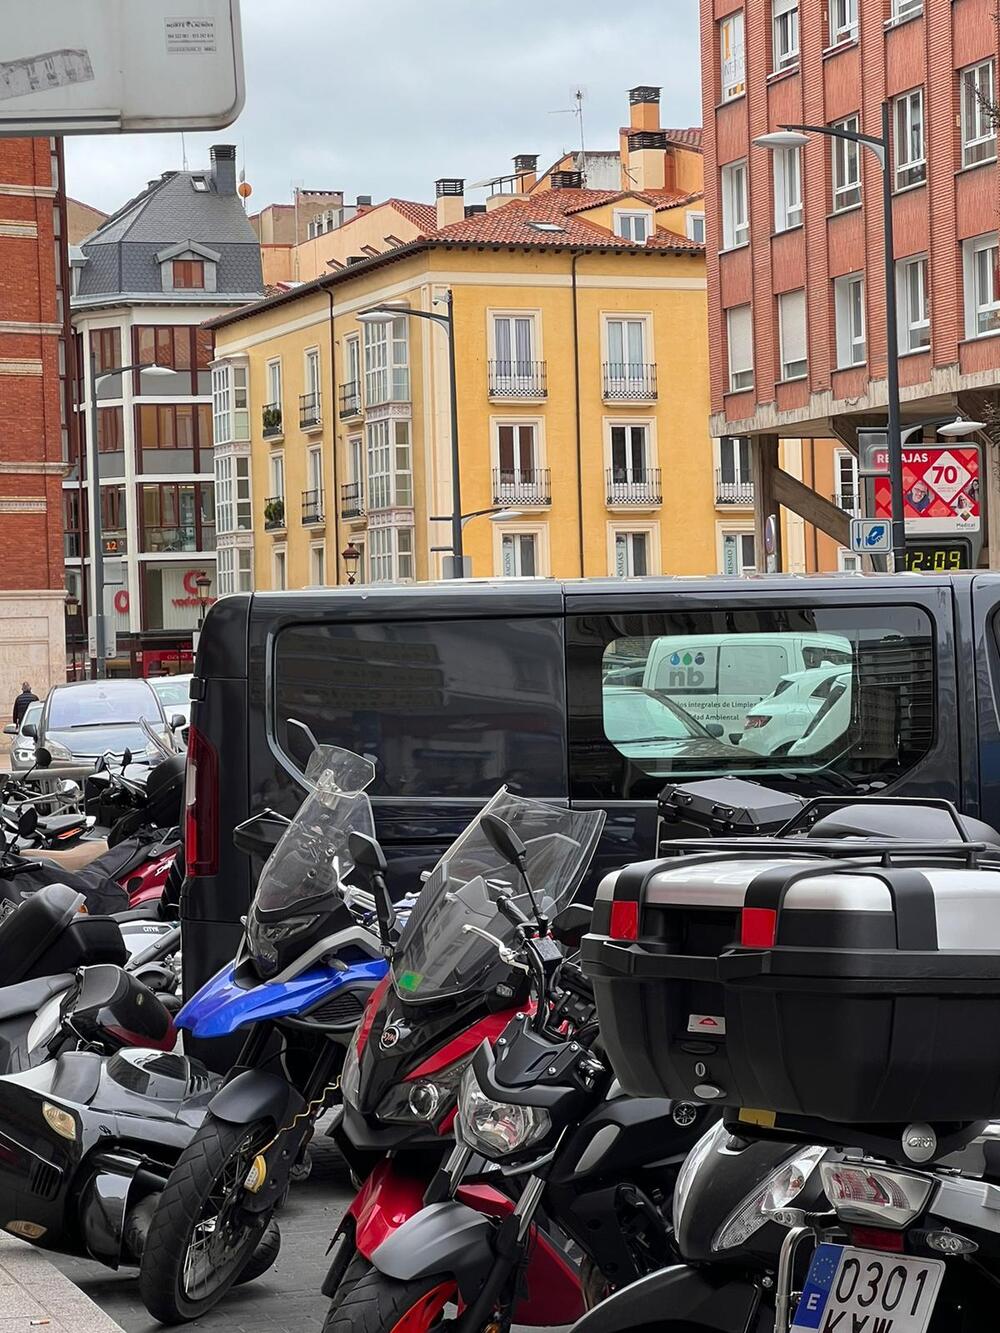 Se lleva varias motos por delante al aparcar sin frenos